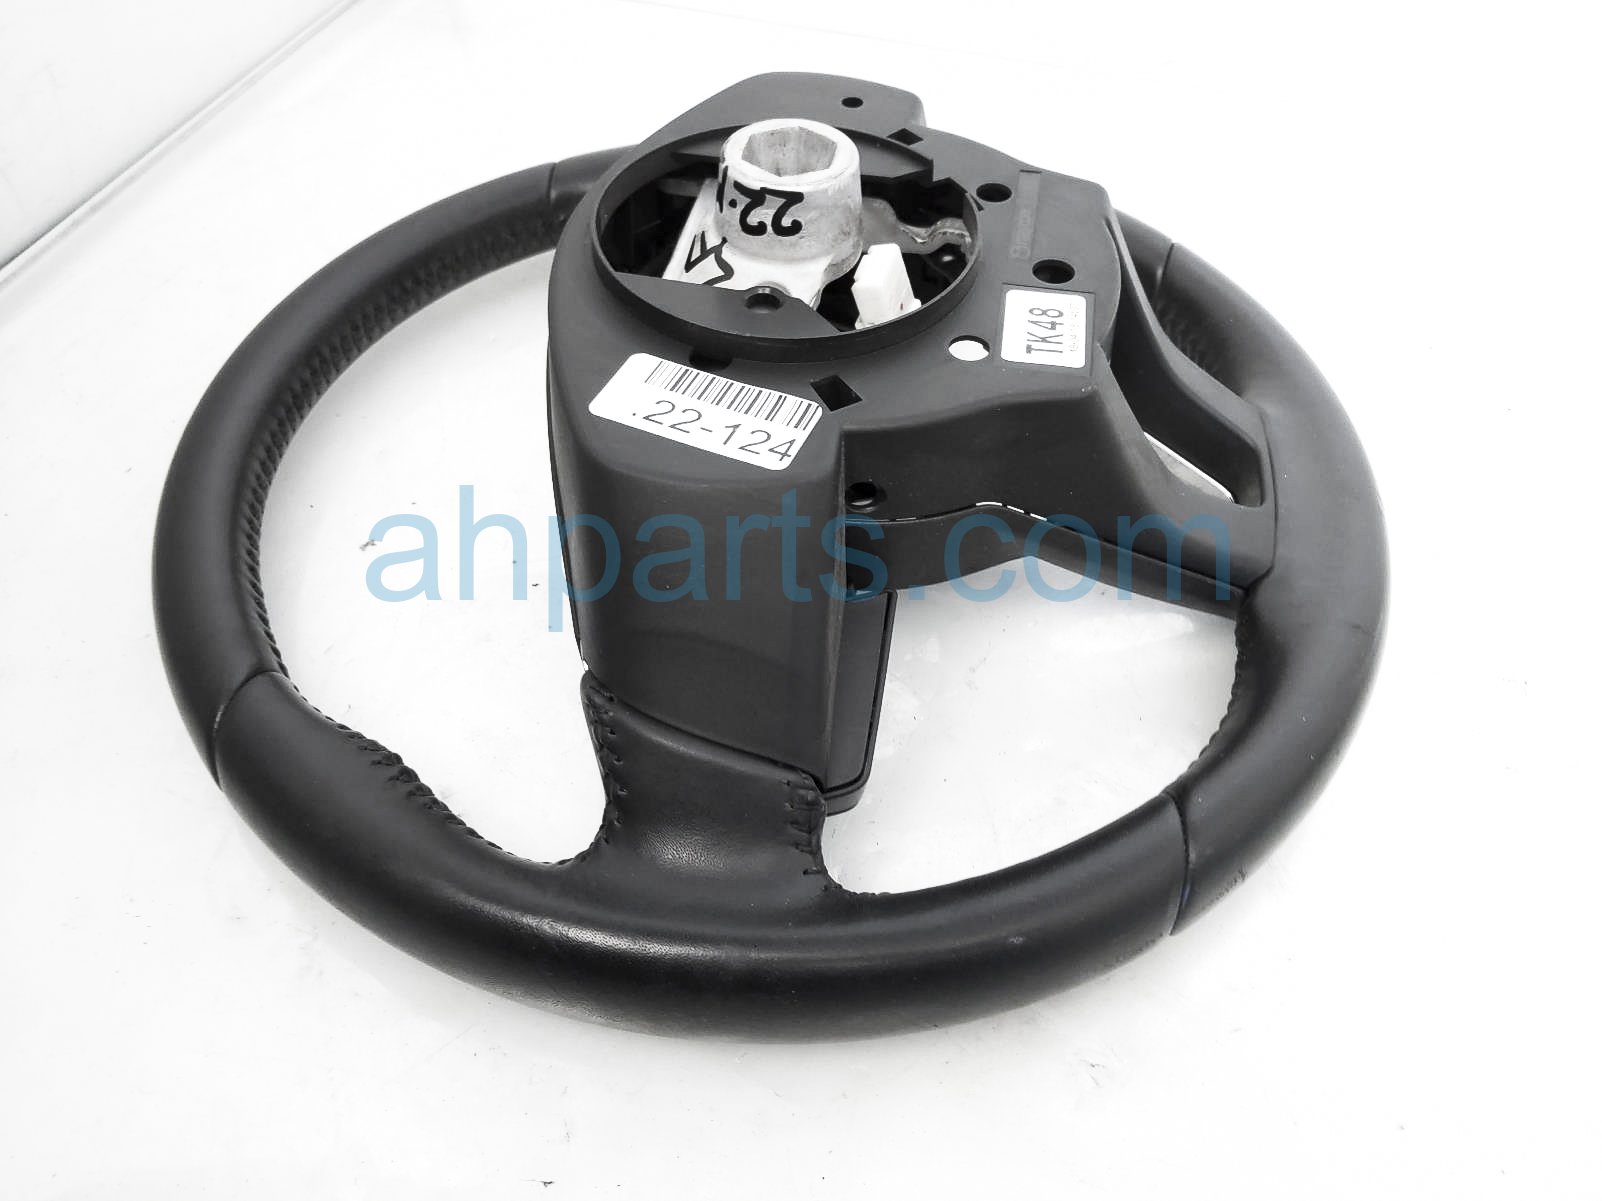 Sold 2019 Mazda CX-9 Steering Wheel - Black - Touring TK48-32-982-02